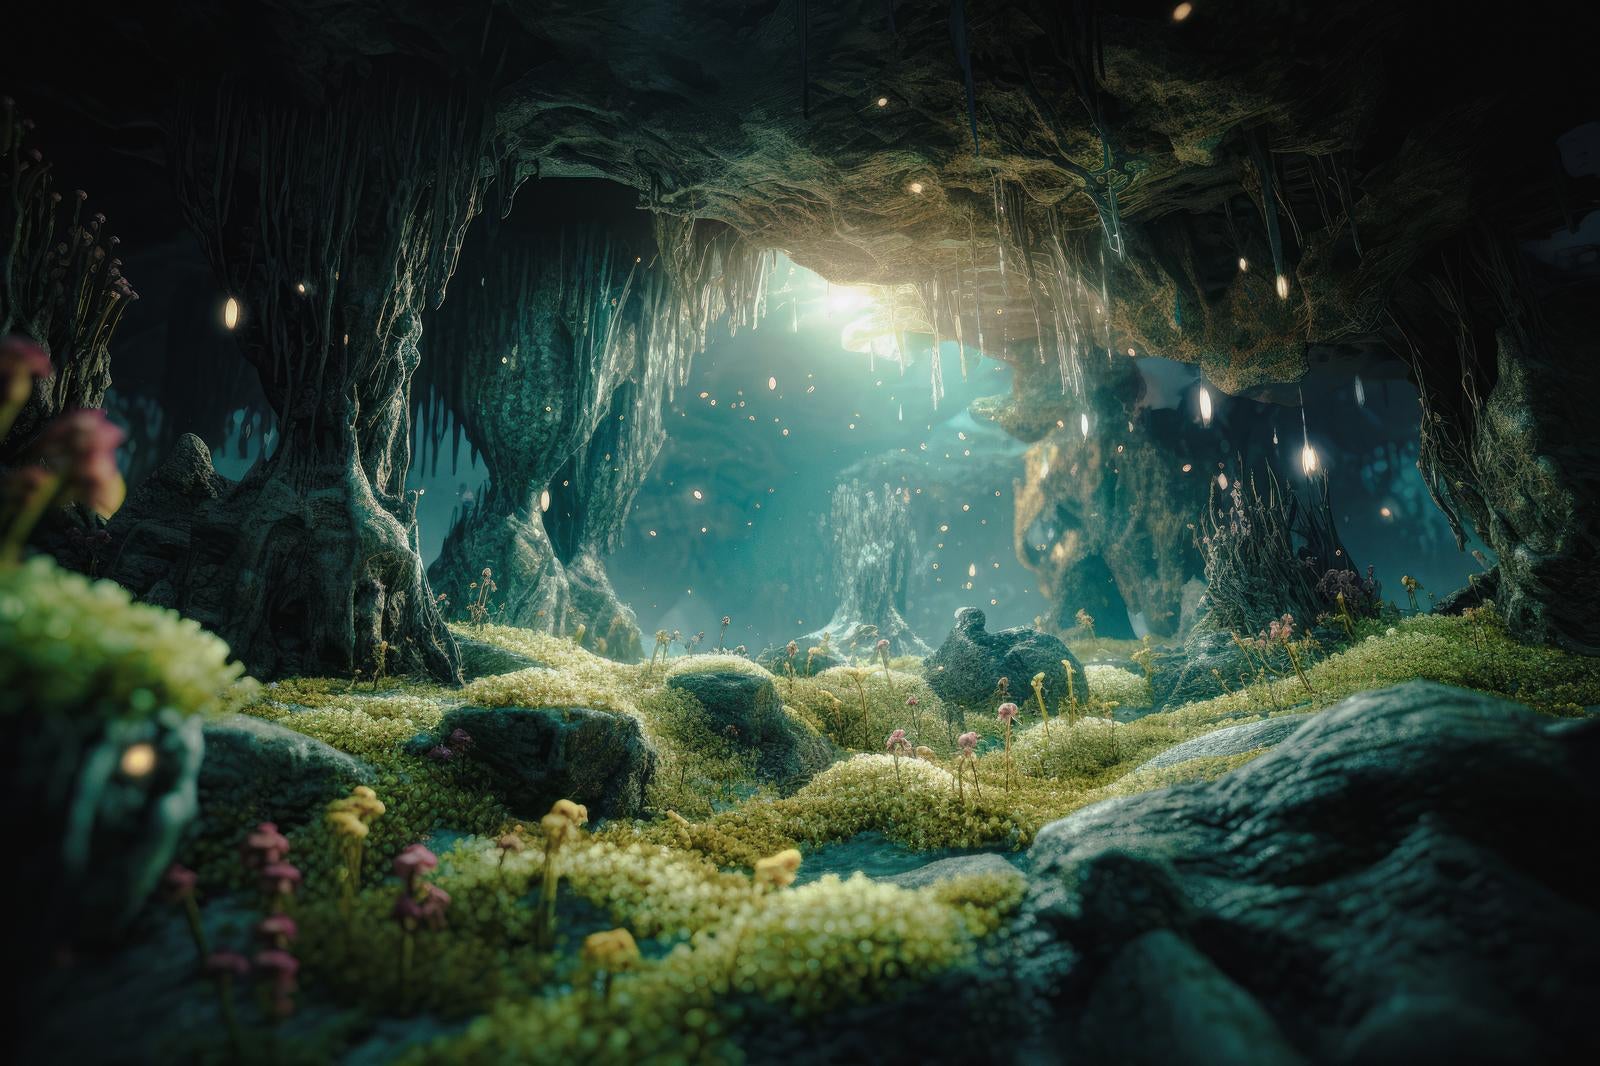 「洞窟の中の生命の息吹」の写真